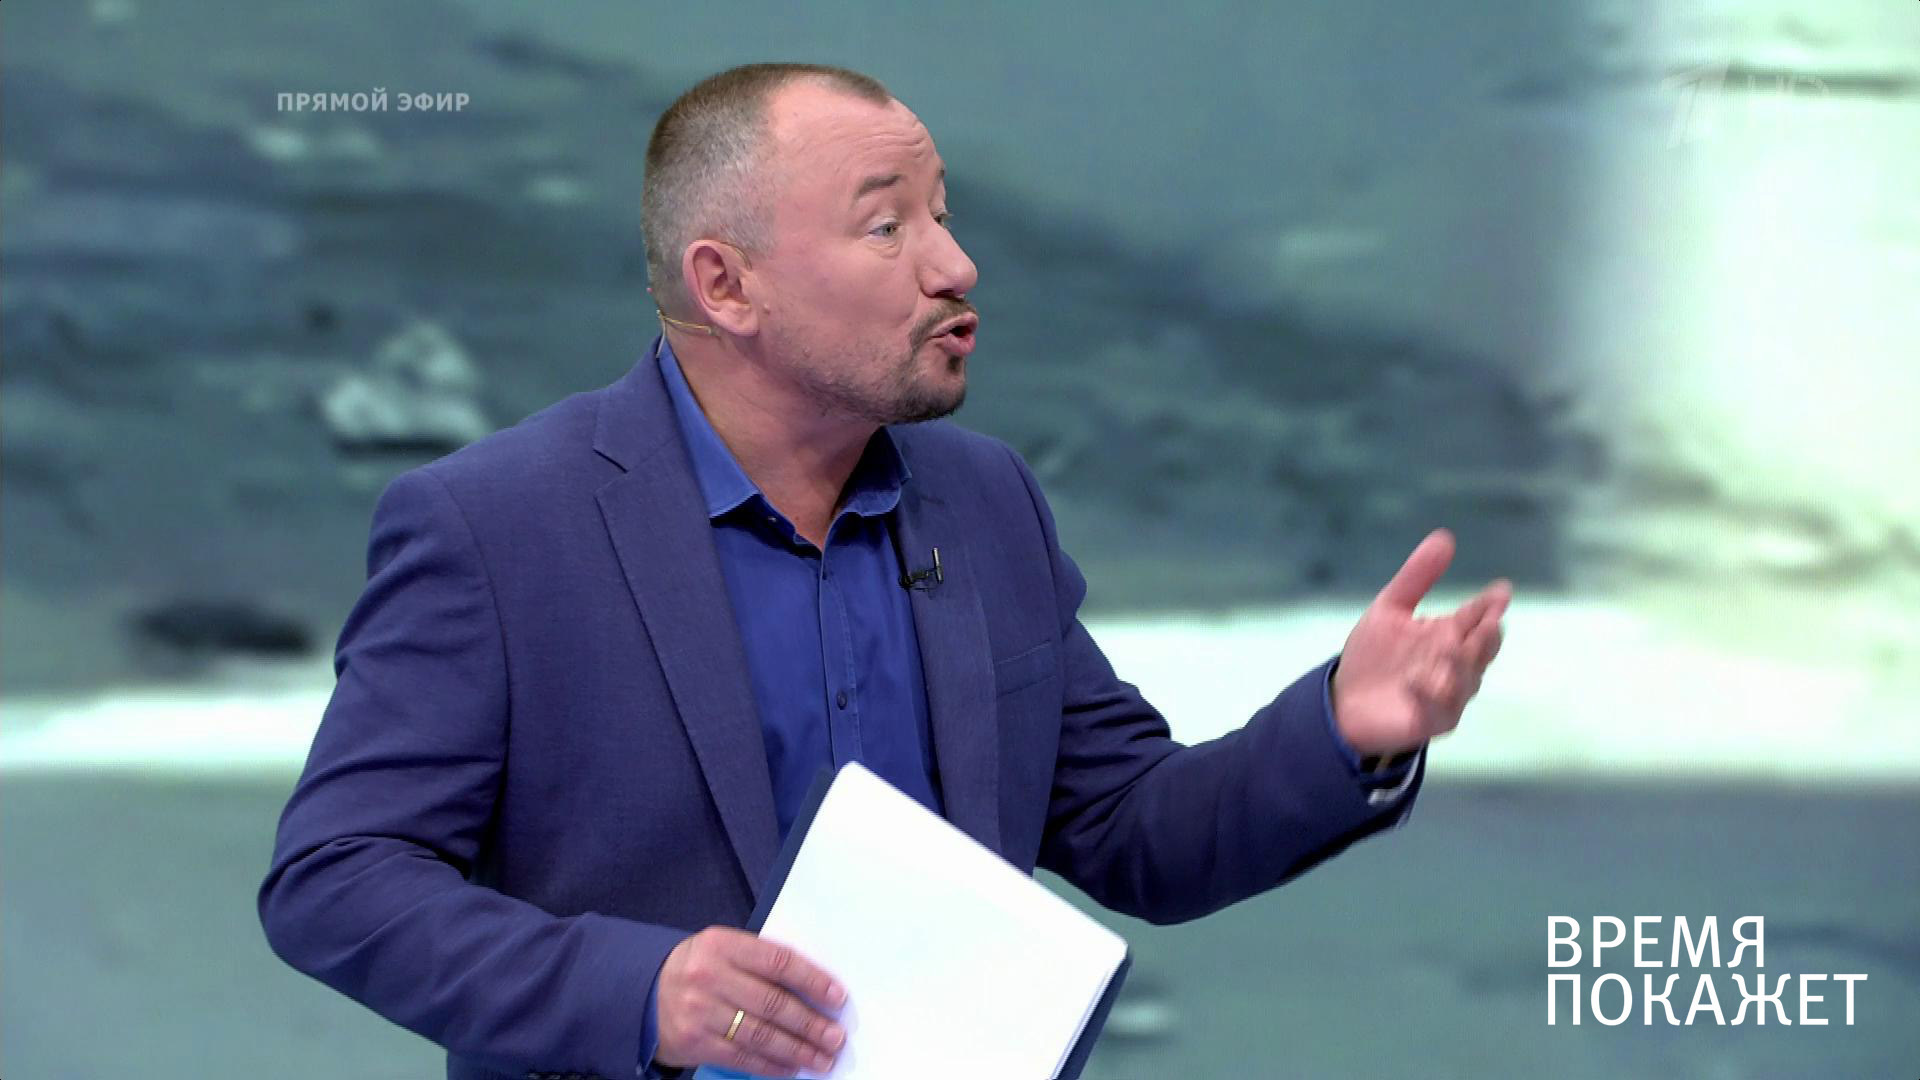 Сказал правду: белорусский эксперт опозорил Шейнина в эфире «Время покажет»